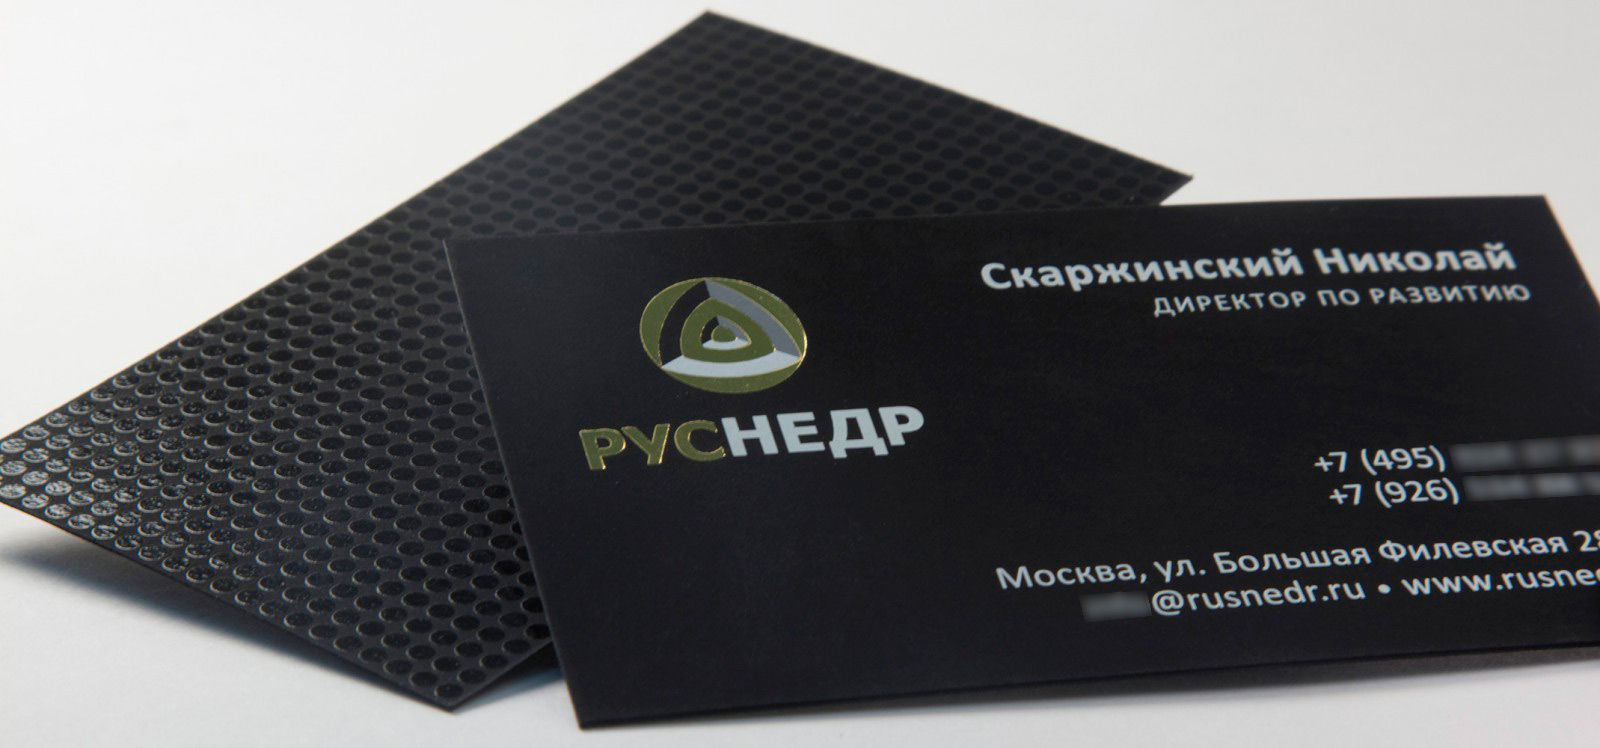 визитка на черной бумаге с применением технологии шелкография компании Руснедр